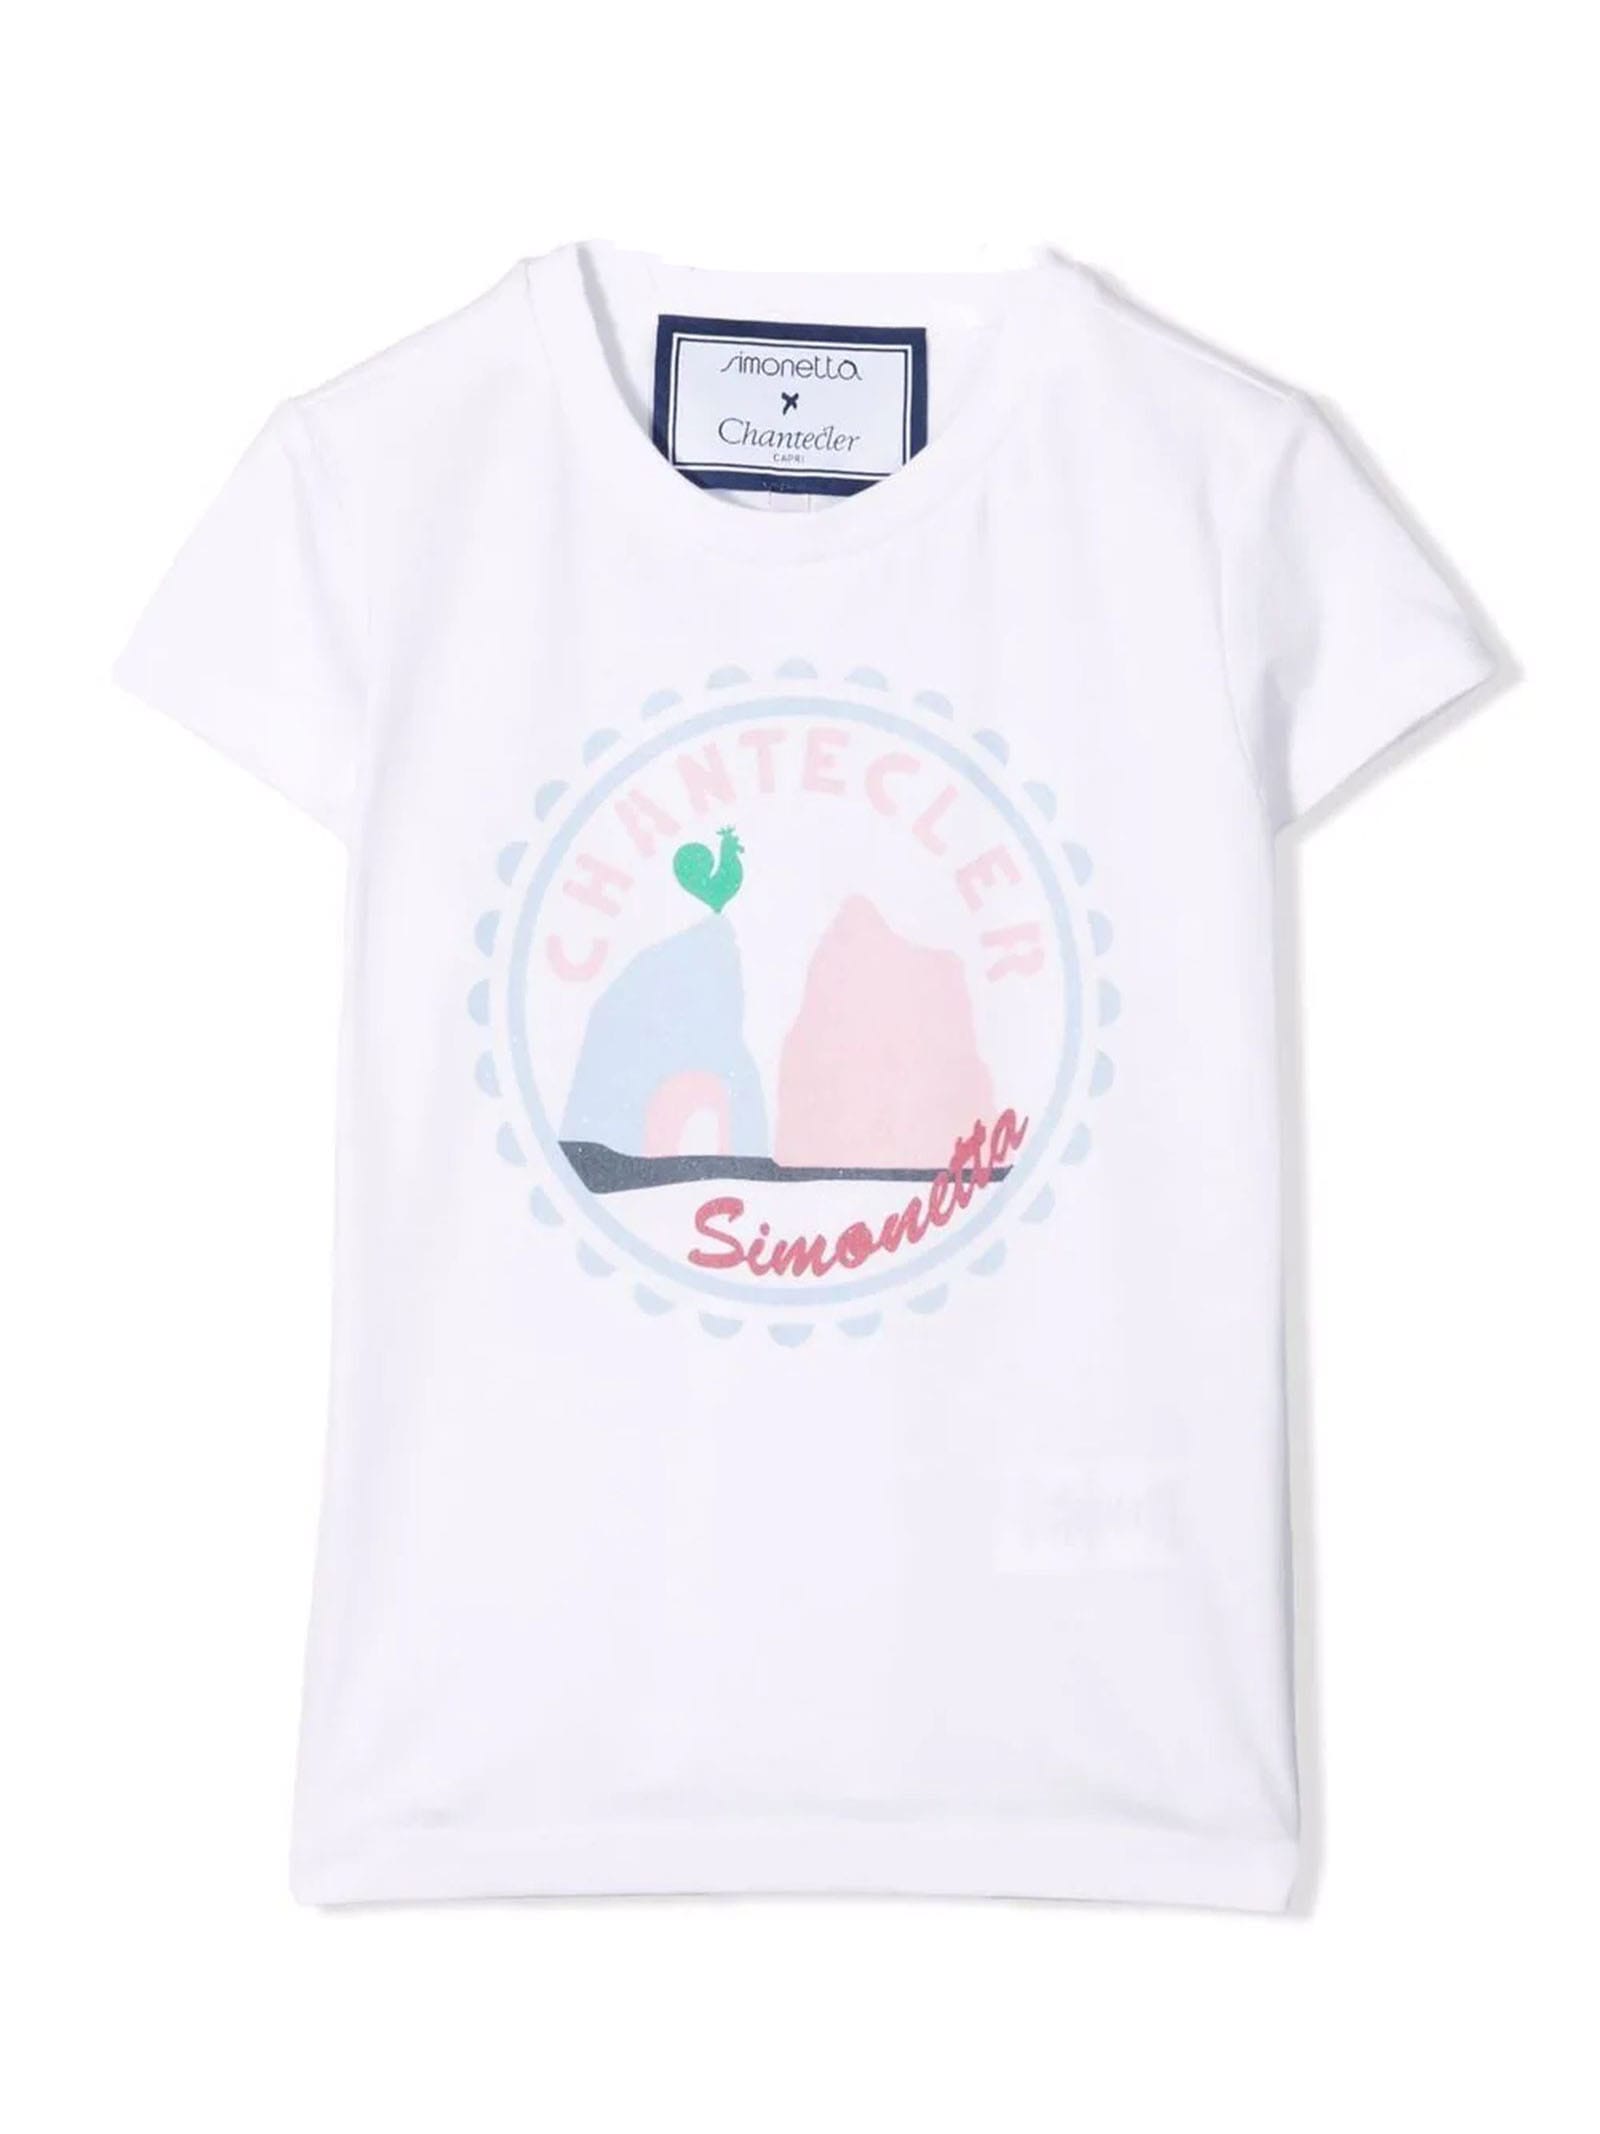 Simonetta White Cotton T-shirt